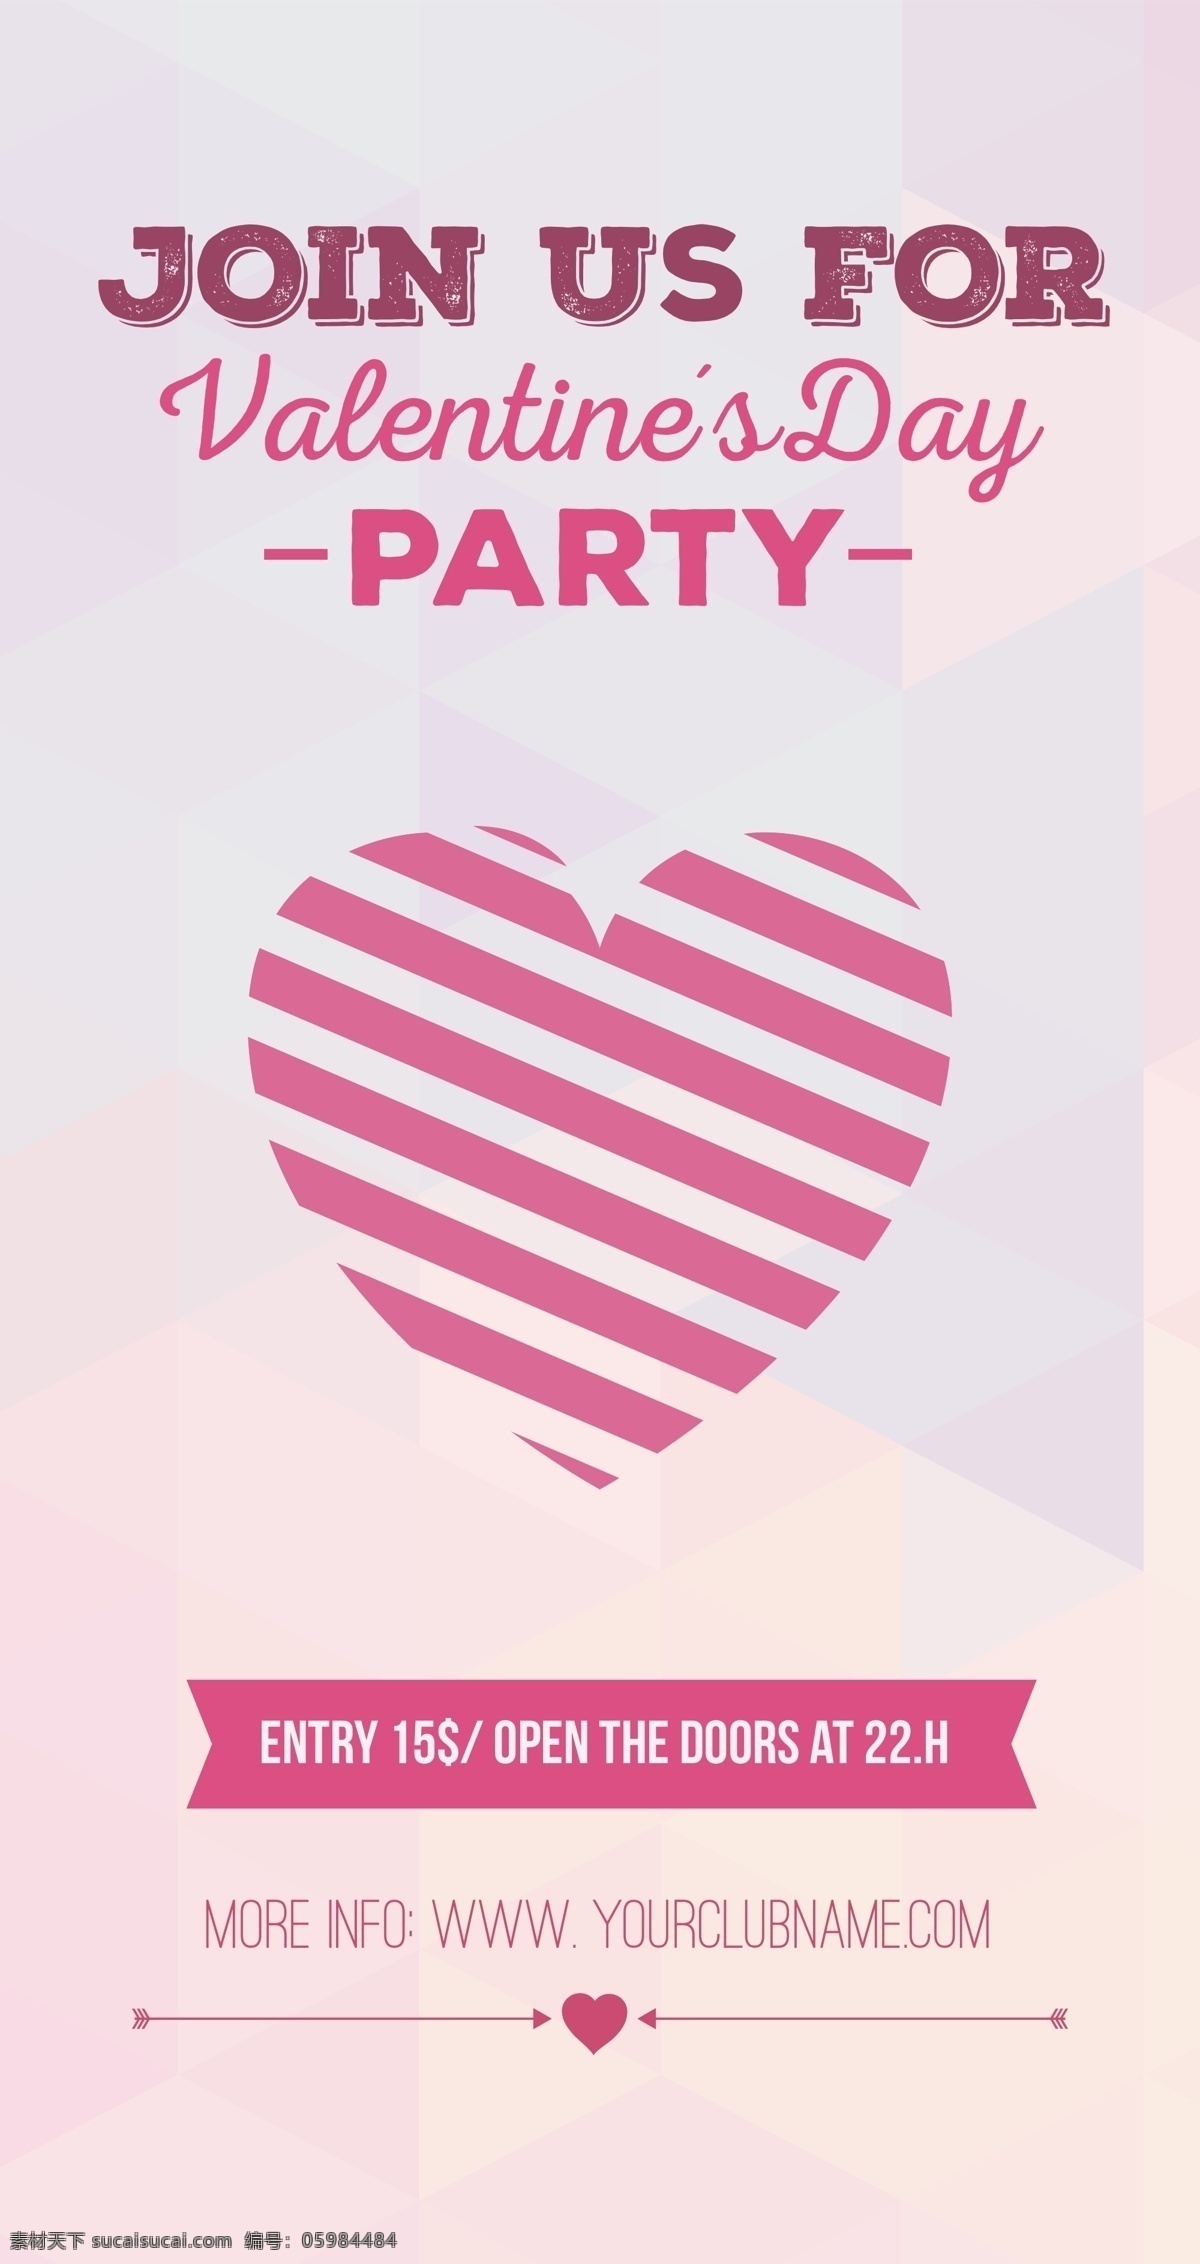 情人节派邀请 海报 传单 聚会 情人节 庆祝活动 第二天 2月14 二月